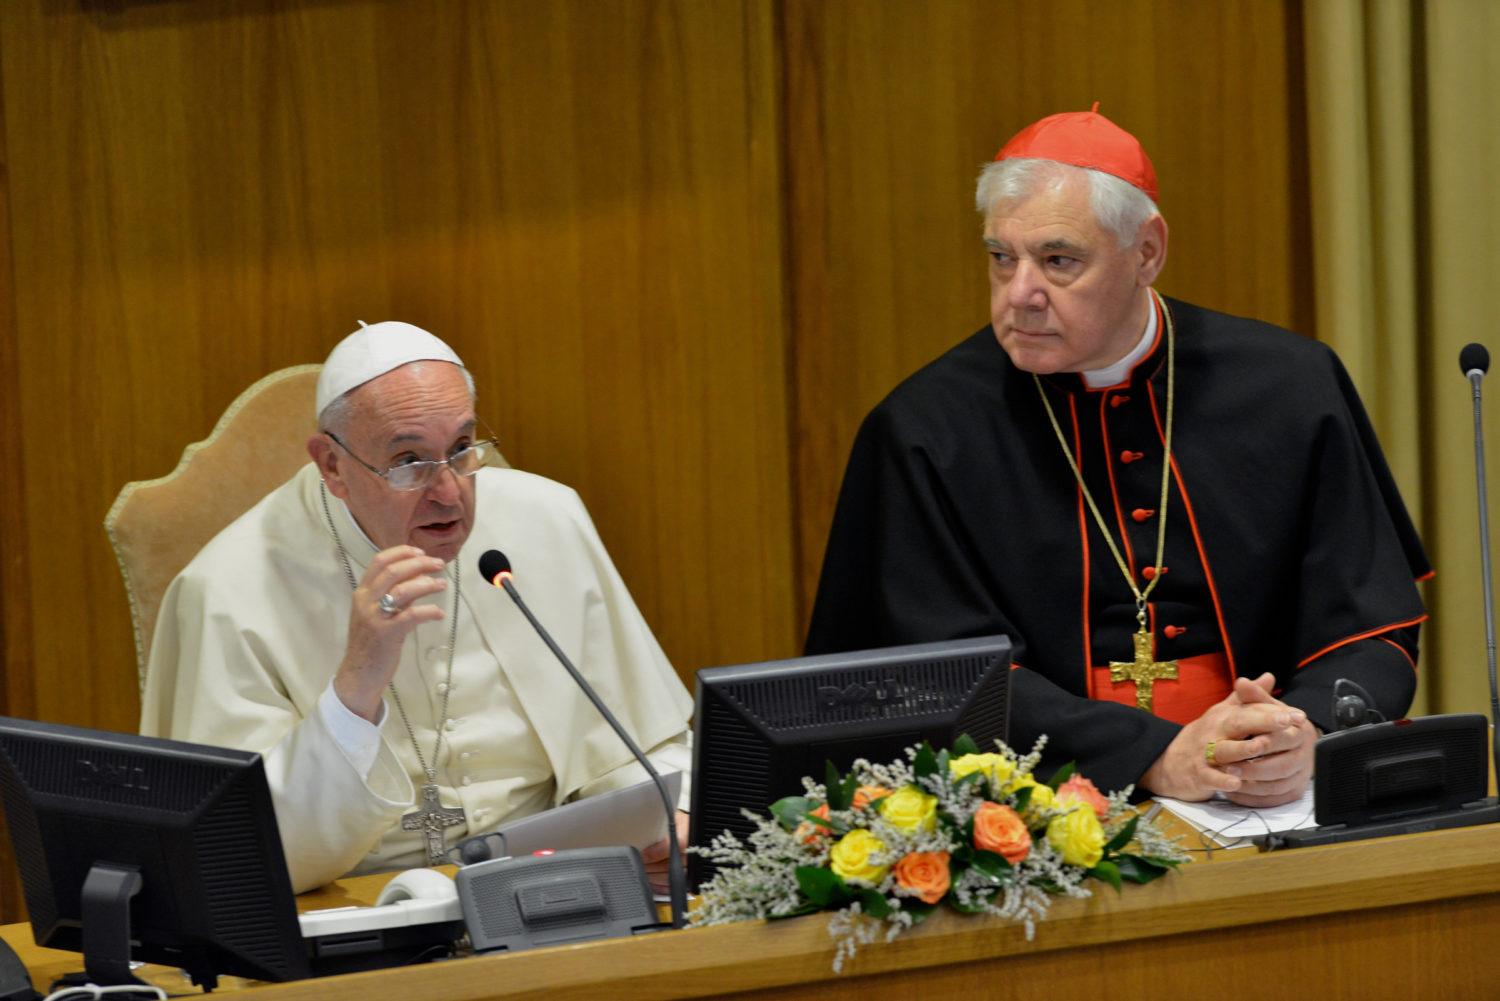 OTROS TIEMPOS. El cardenal Müller escucha un mensaje del papa Francisco. FOTO DE CHURCH MILITANT
